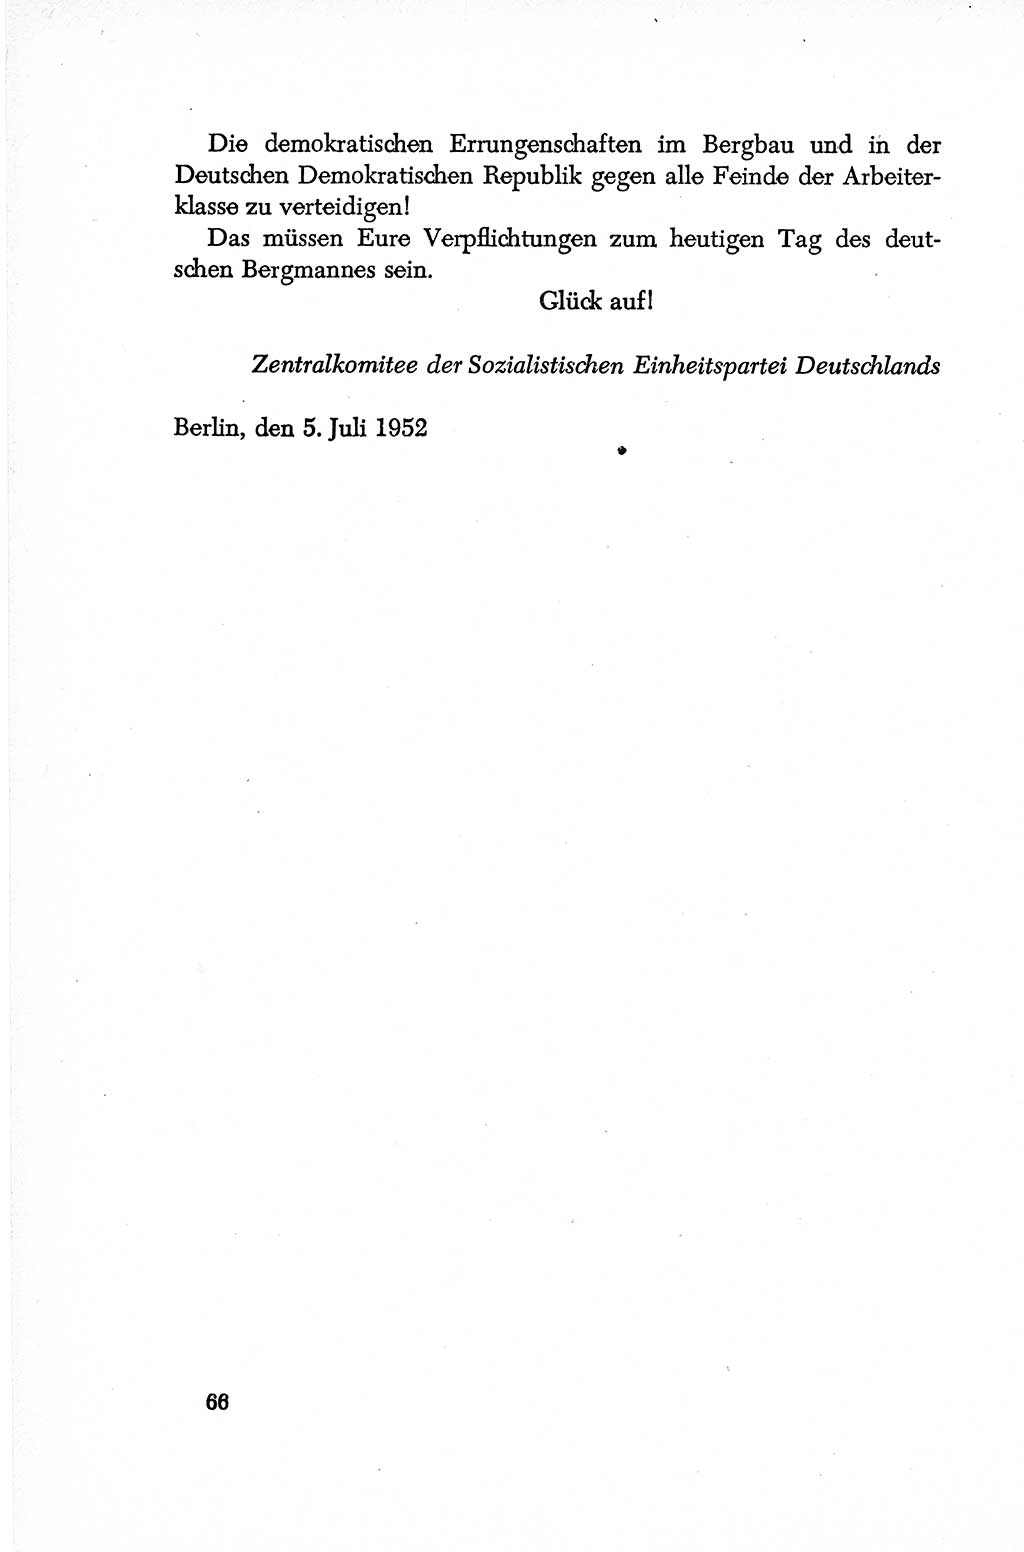 Dokumente der Sozialistischen Einheitspartei Deutschlands (SED) [Deutsche Demokratische Republik (DDR)] 1952-1953, Seite 66 (Dok. SED DDR 1952-1953, S. 66)